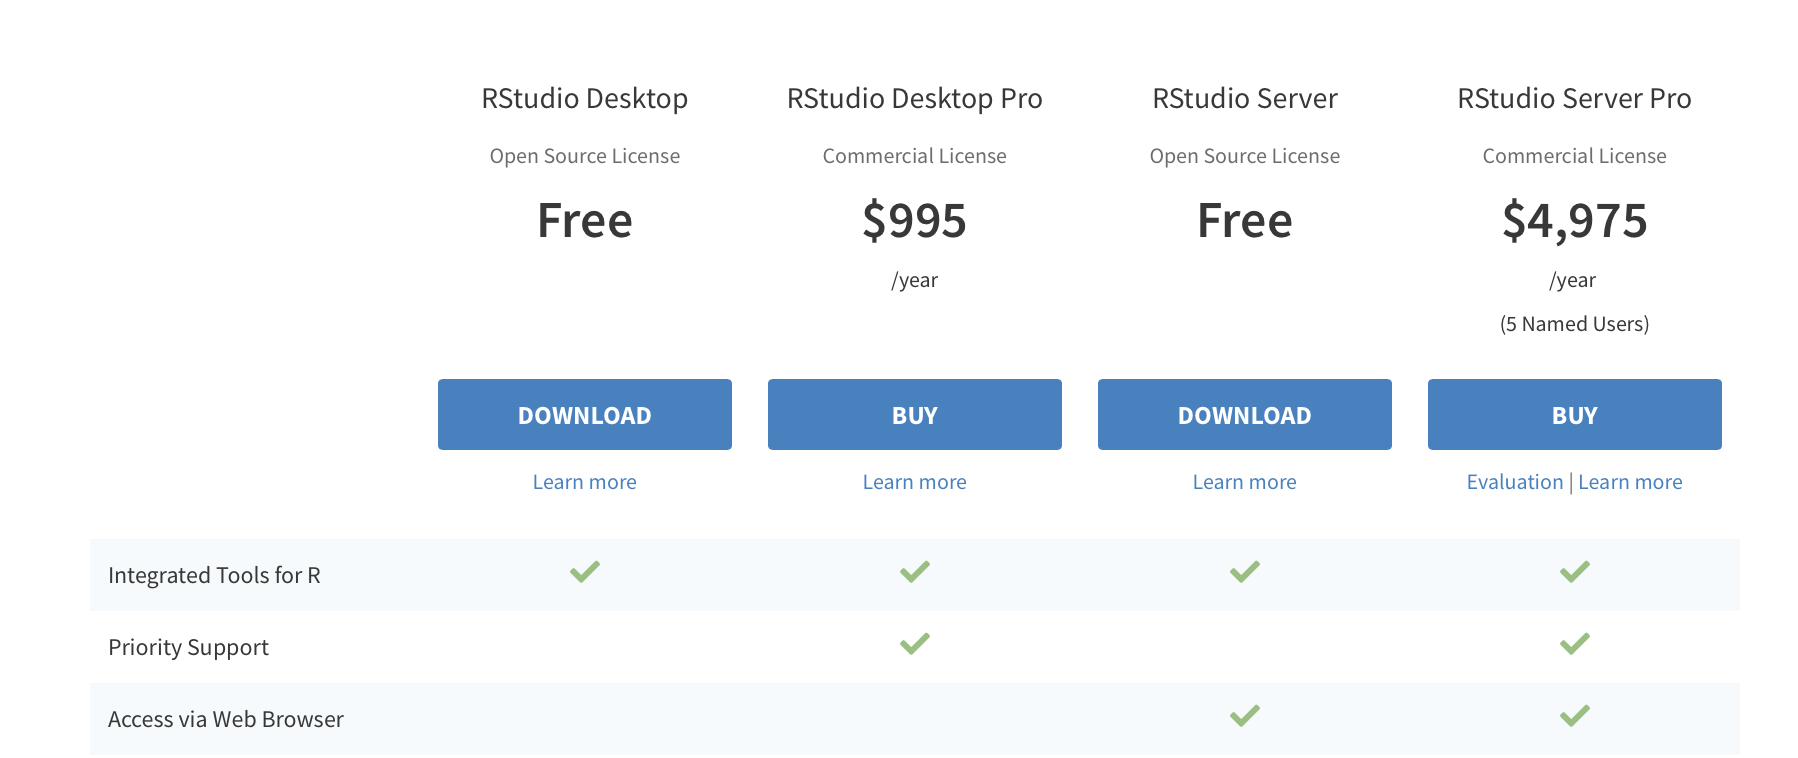 Seleccione "Download" en la columna "RStudio Desktop Open Source License".